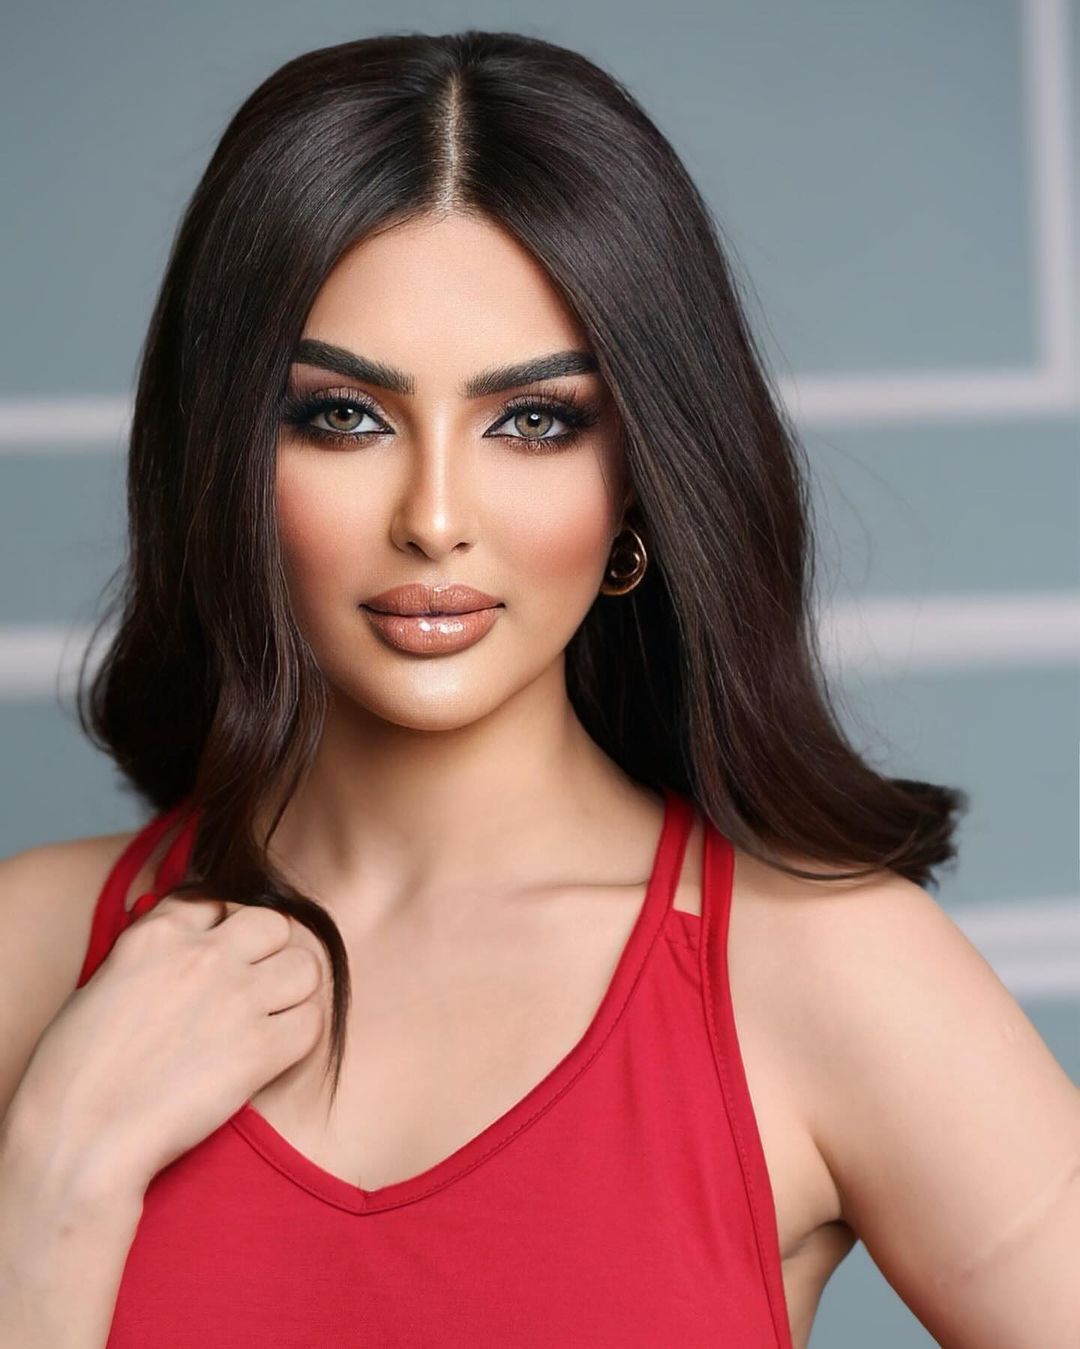 Organizatorzy Miss Universe zaprzeczyli udziałowi Arabii Saudyjskiej w konkursie i oskarżyli 27-letnią modelkę o kłamstwo